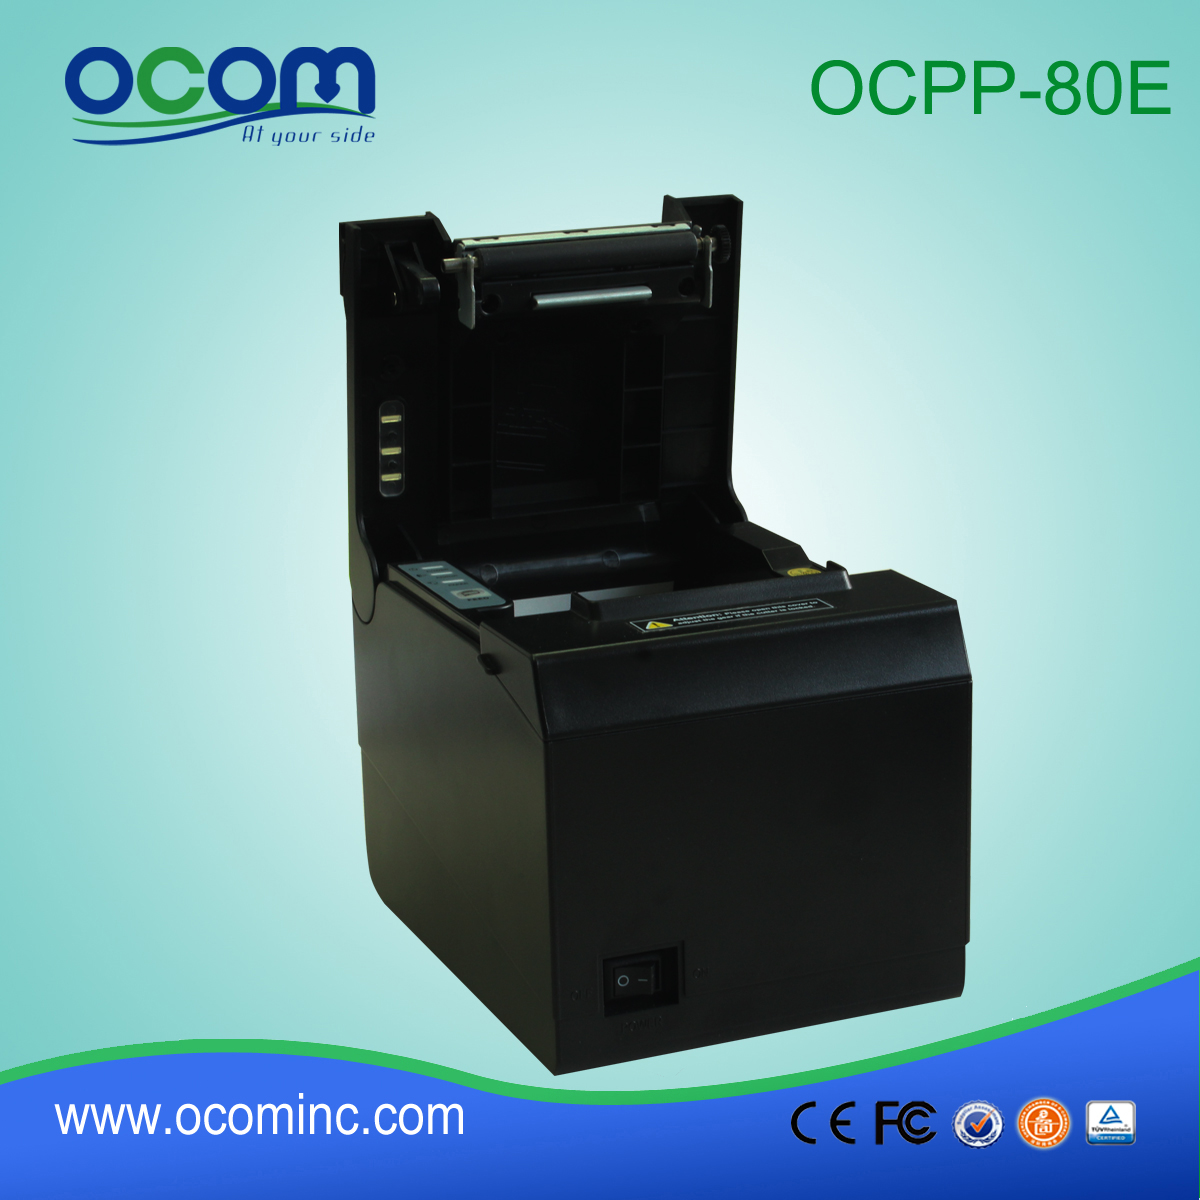 OCPP-80E USB / paralelo cortador automático 80 milímetros impressora de recibos barato pos térmica